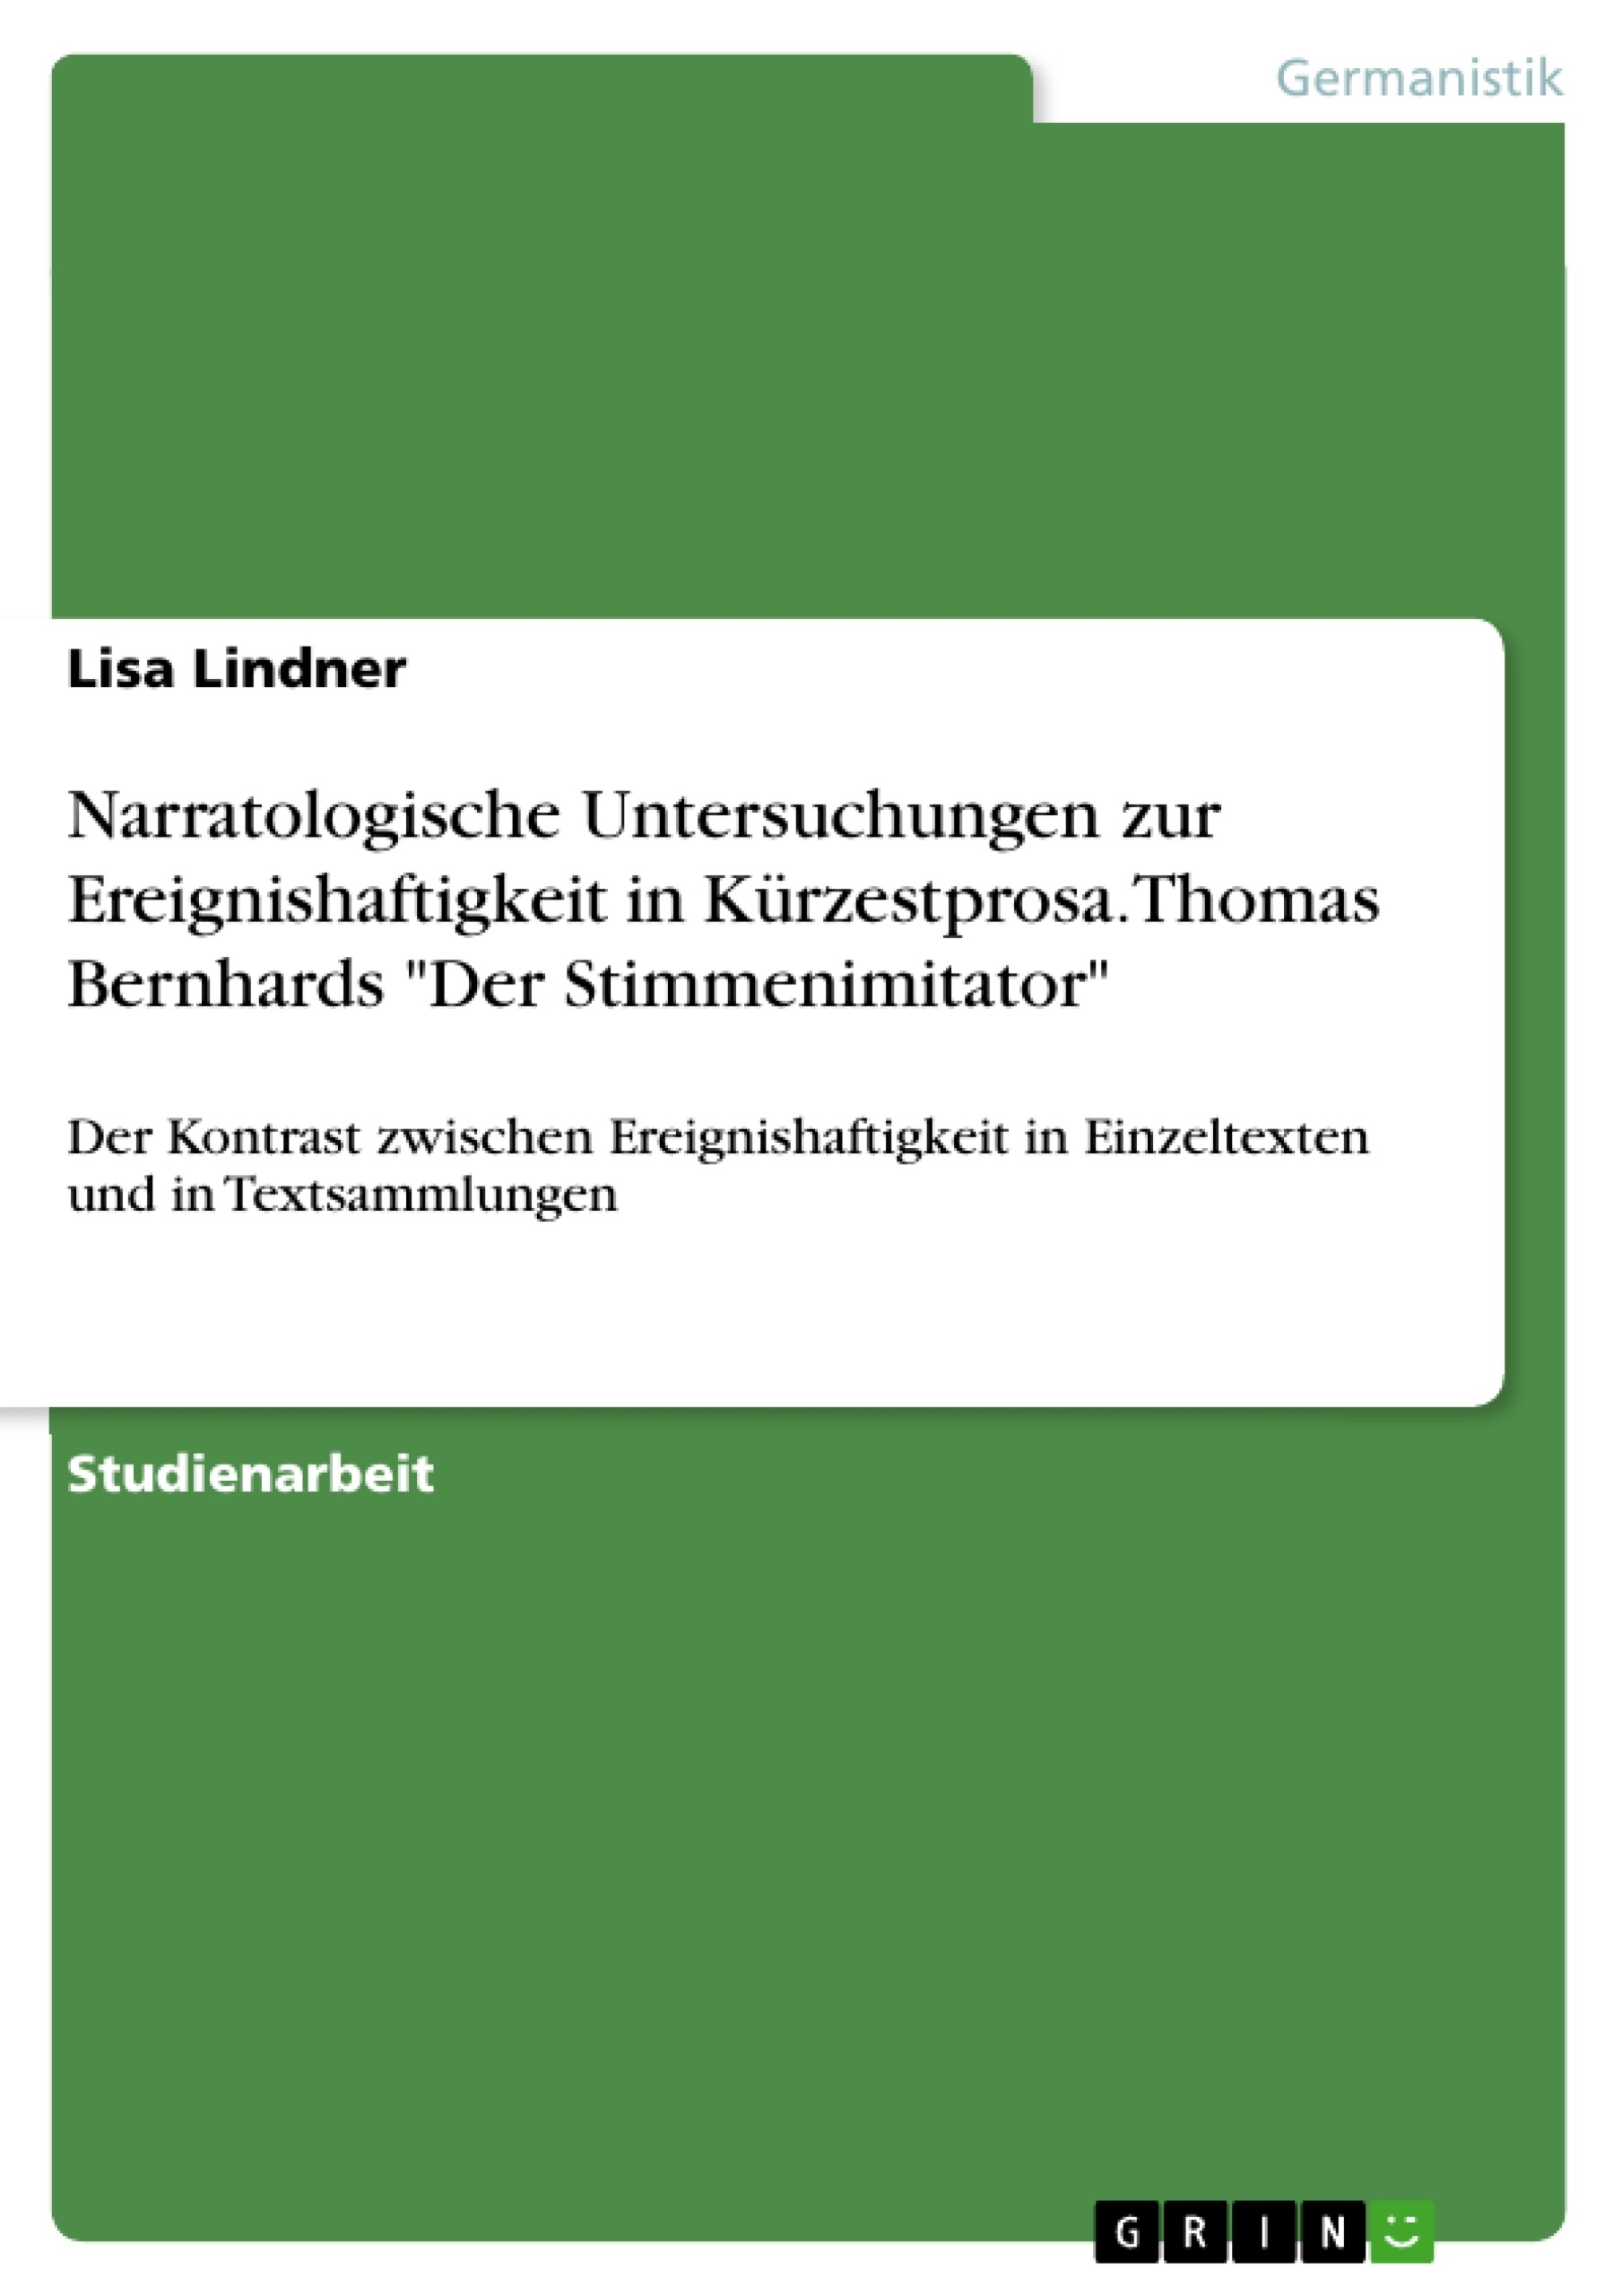 Titre: Narratologische Untersuchungen zur Ereignishaftigkeit in Kürzestprosa. Thomas Bernhards "Der Stimmenimitator"